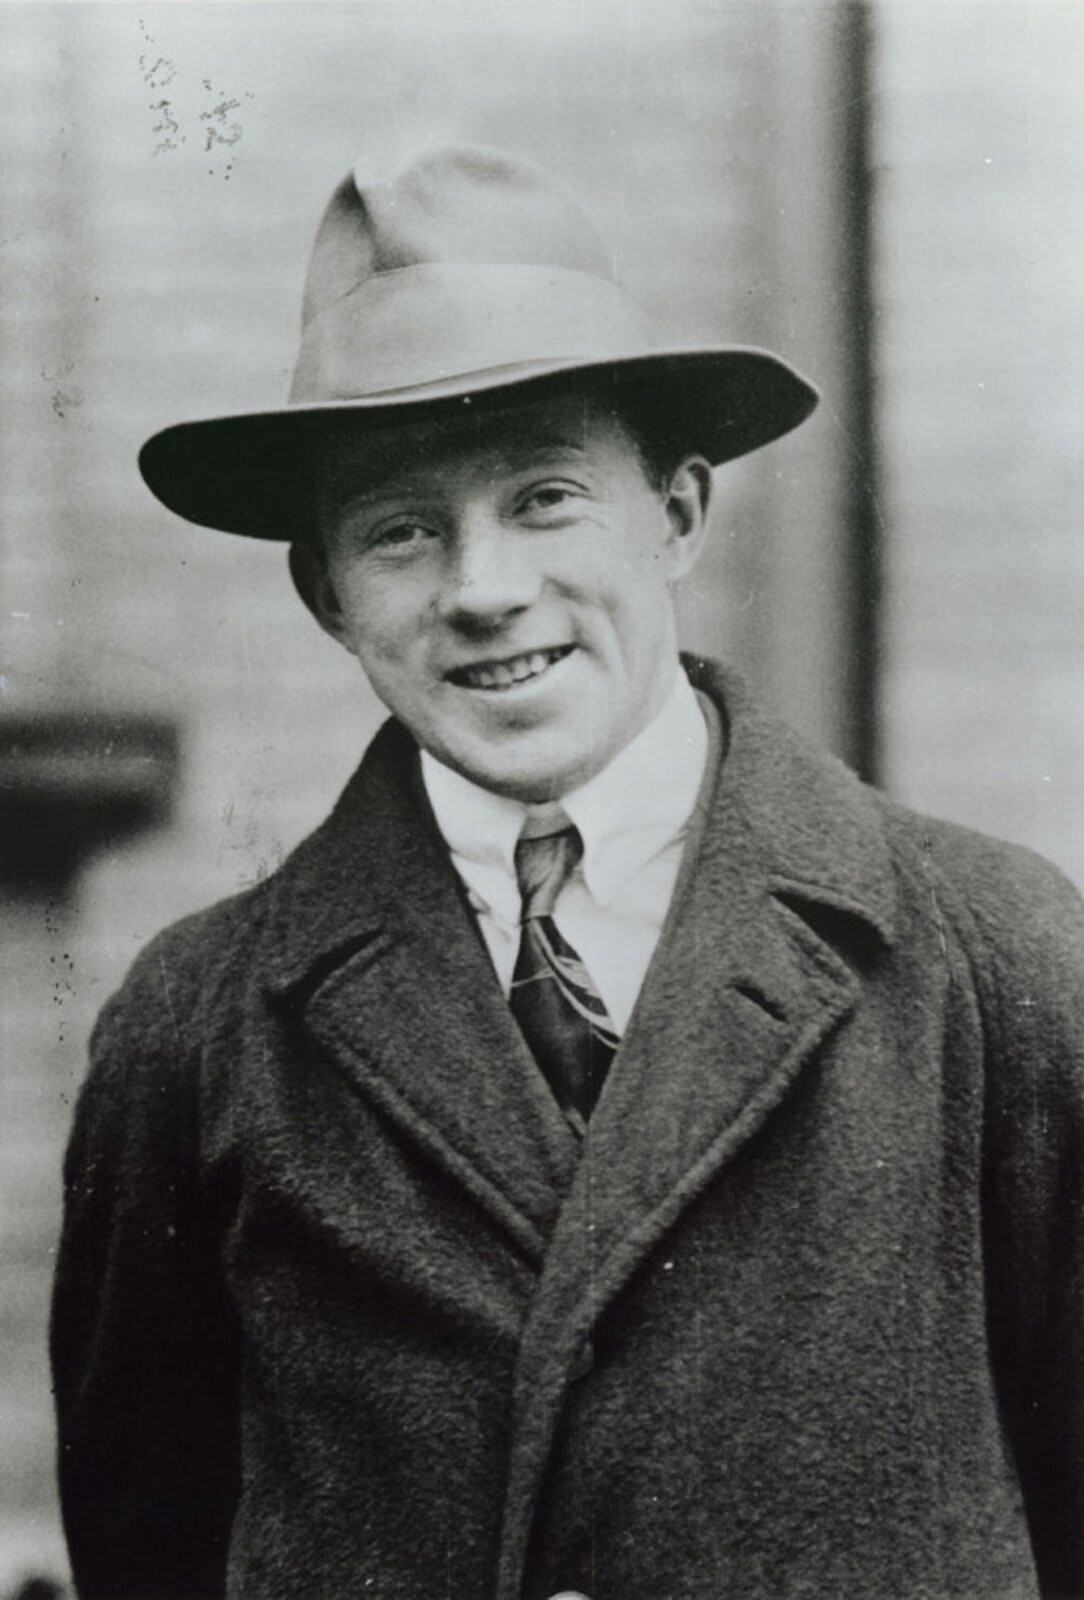 Rys. 6. Czarno‑białe zdjęcie poglądowe przedstawia Wernera Heisenberga. To młody, szeroko uśmiechnięty mężczyzna, w płaszczu, marynarce, białej koszuli, krawacie i w kapeluszu.